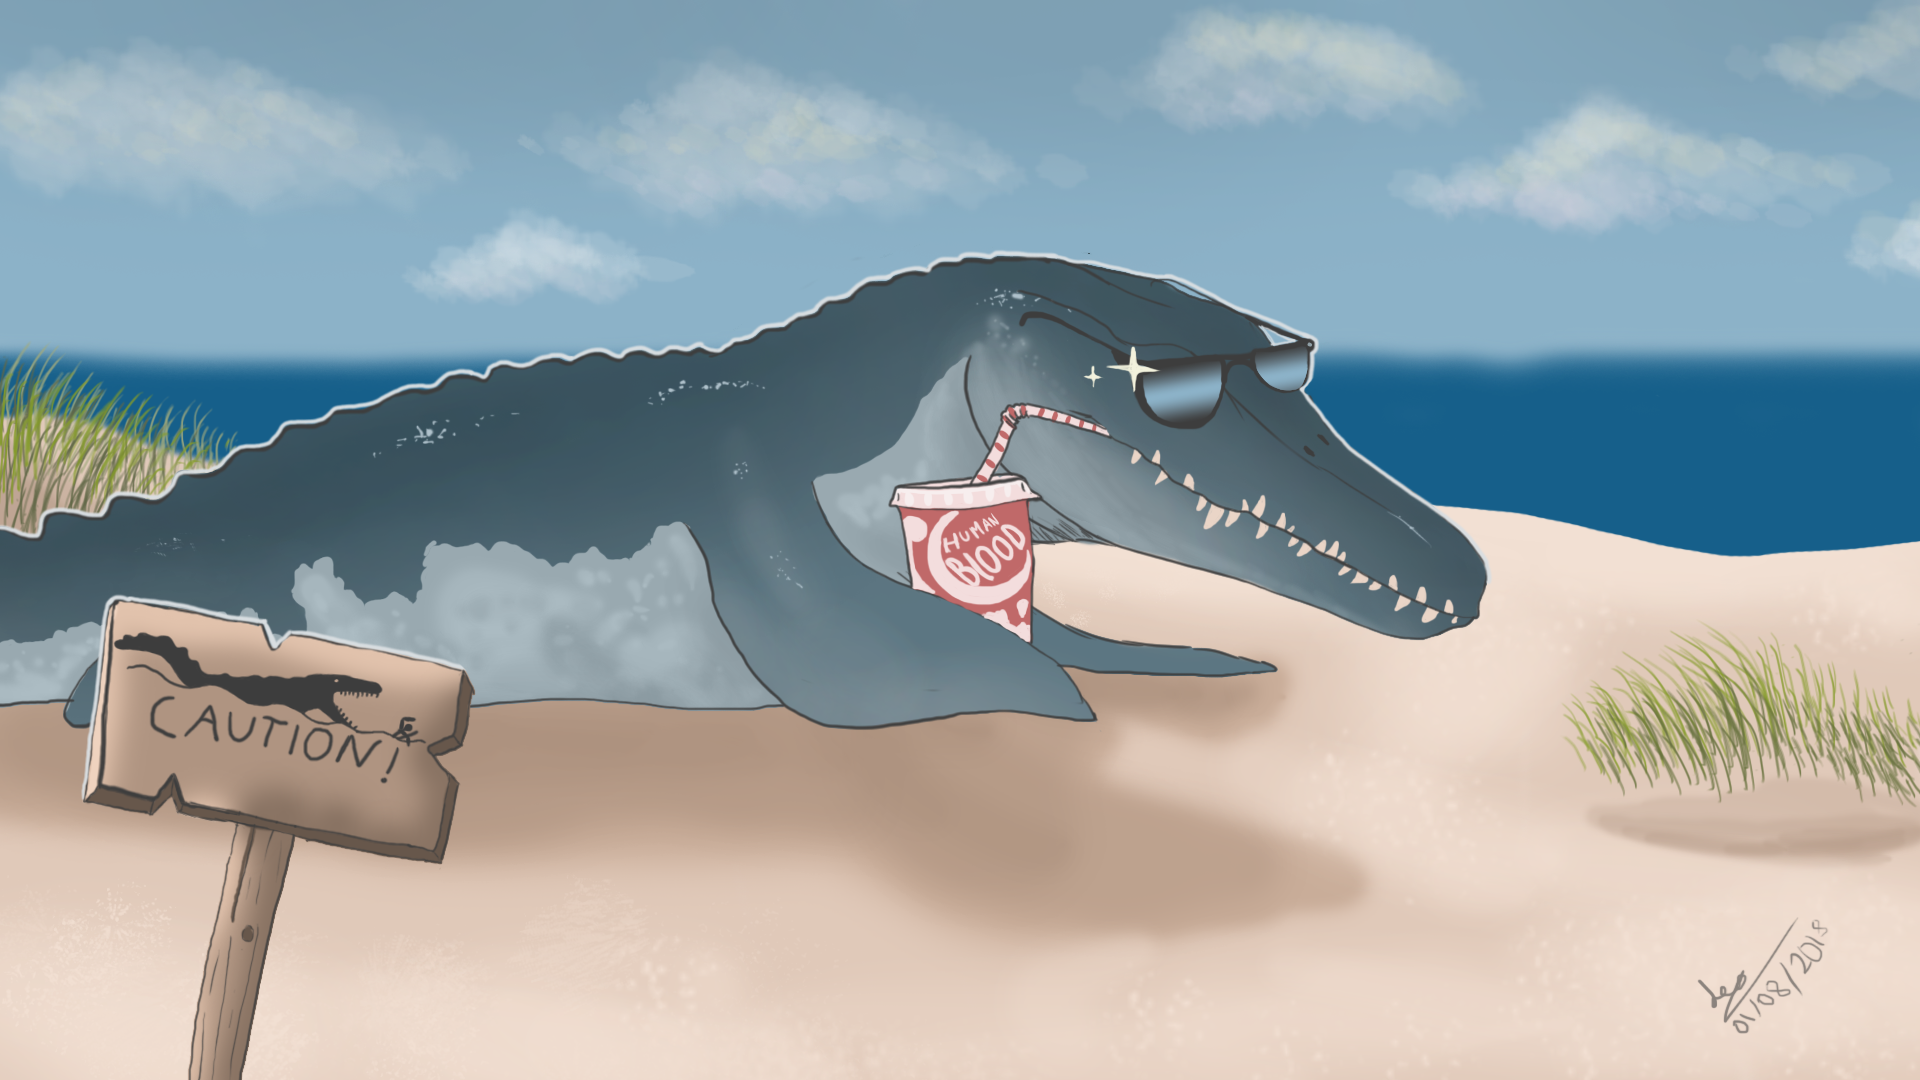 Mosasaurus on the Beach jurassic world fk by SRleotrex444 on DeviantArt